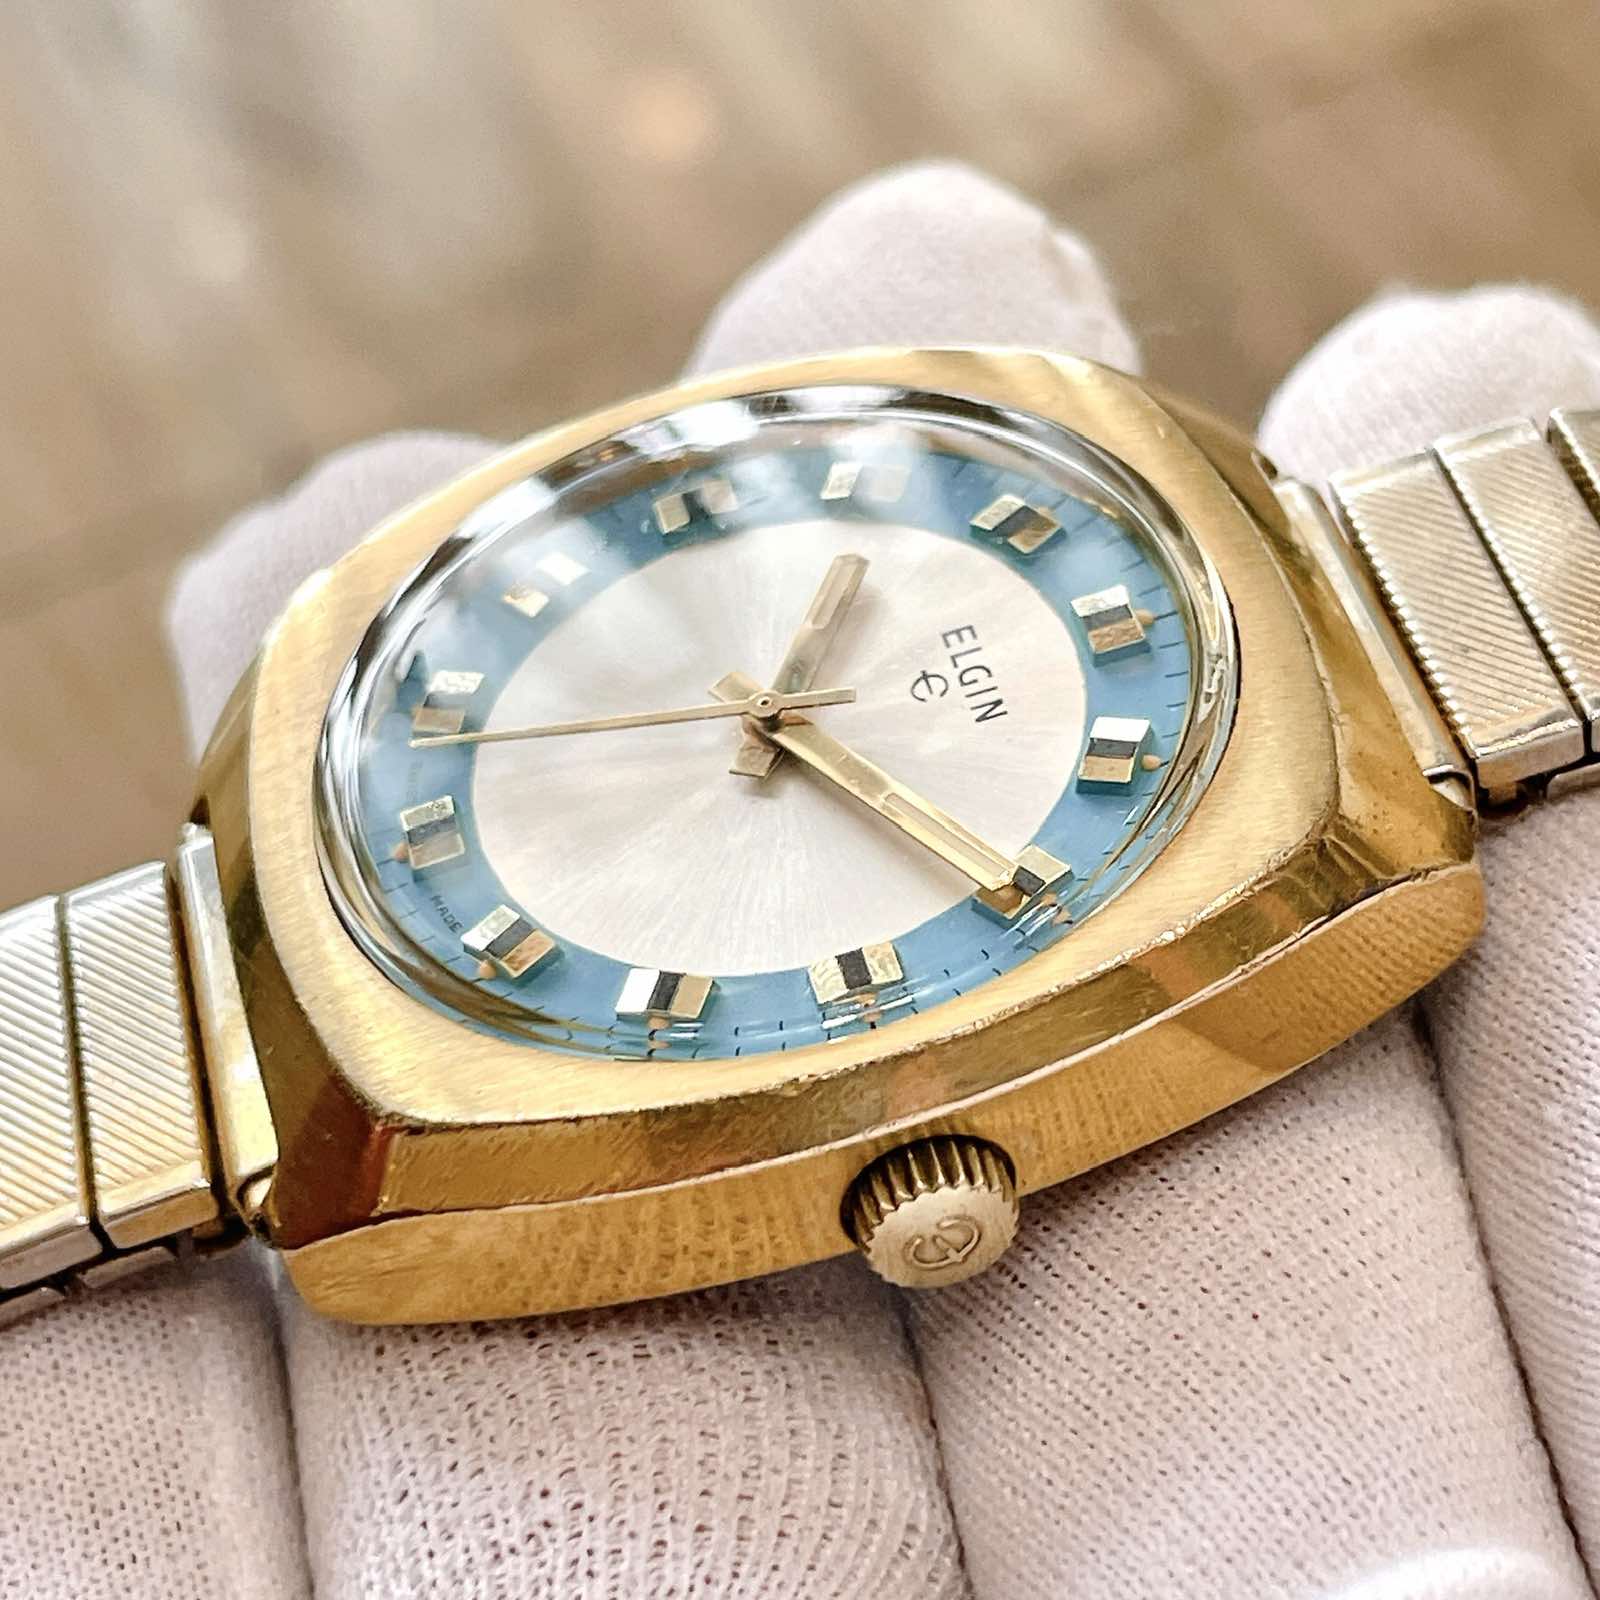 Đồng hồ cổ ELGIN lên dây lacke vàng 18k chính hãng Thụy Sỹ